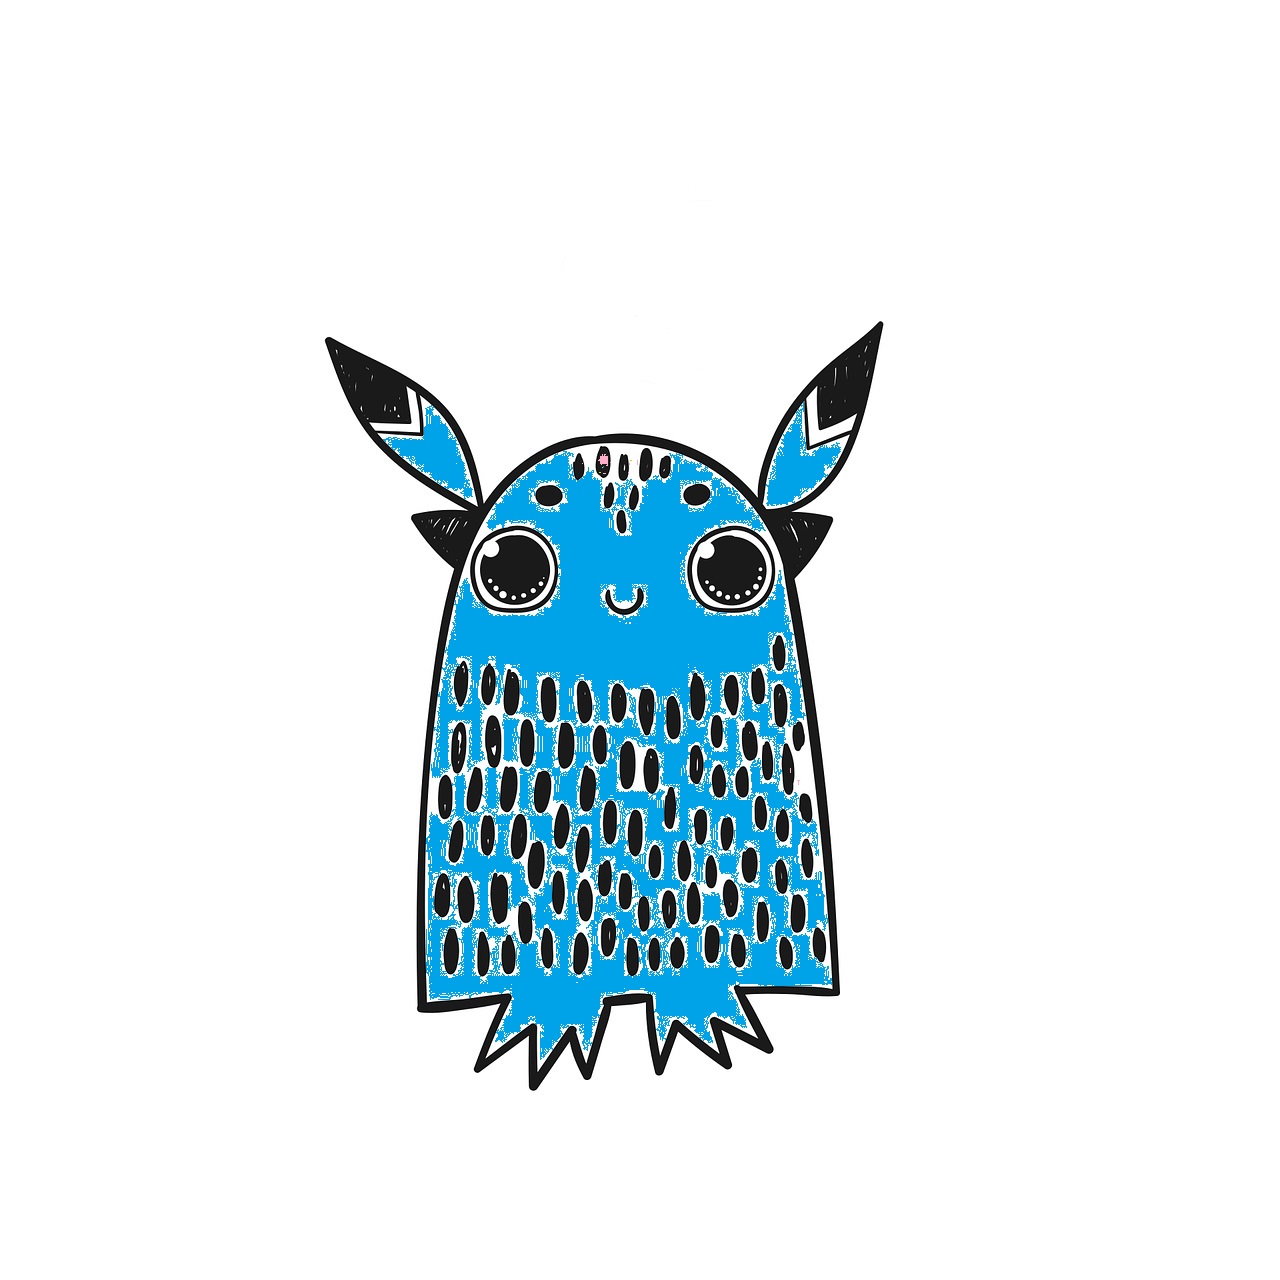 Monstruo azul con forma acampanada, con orejas puntiagudas, sin brazos y pies pequeños. Los ojos son grandes y está sonriendo